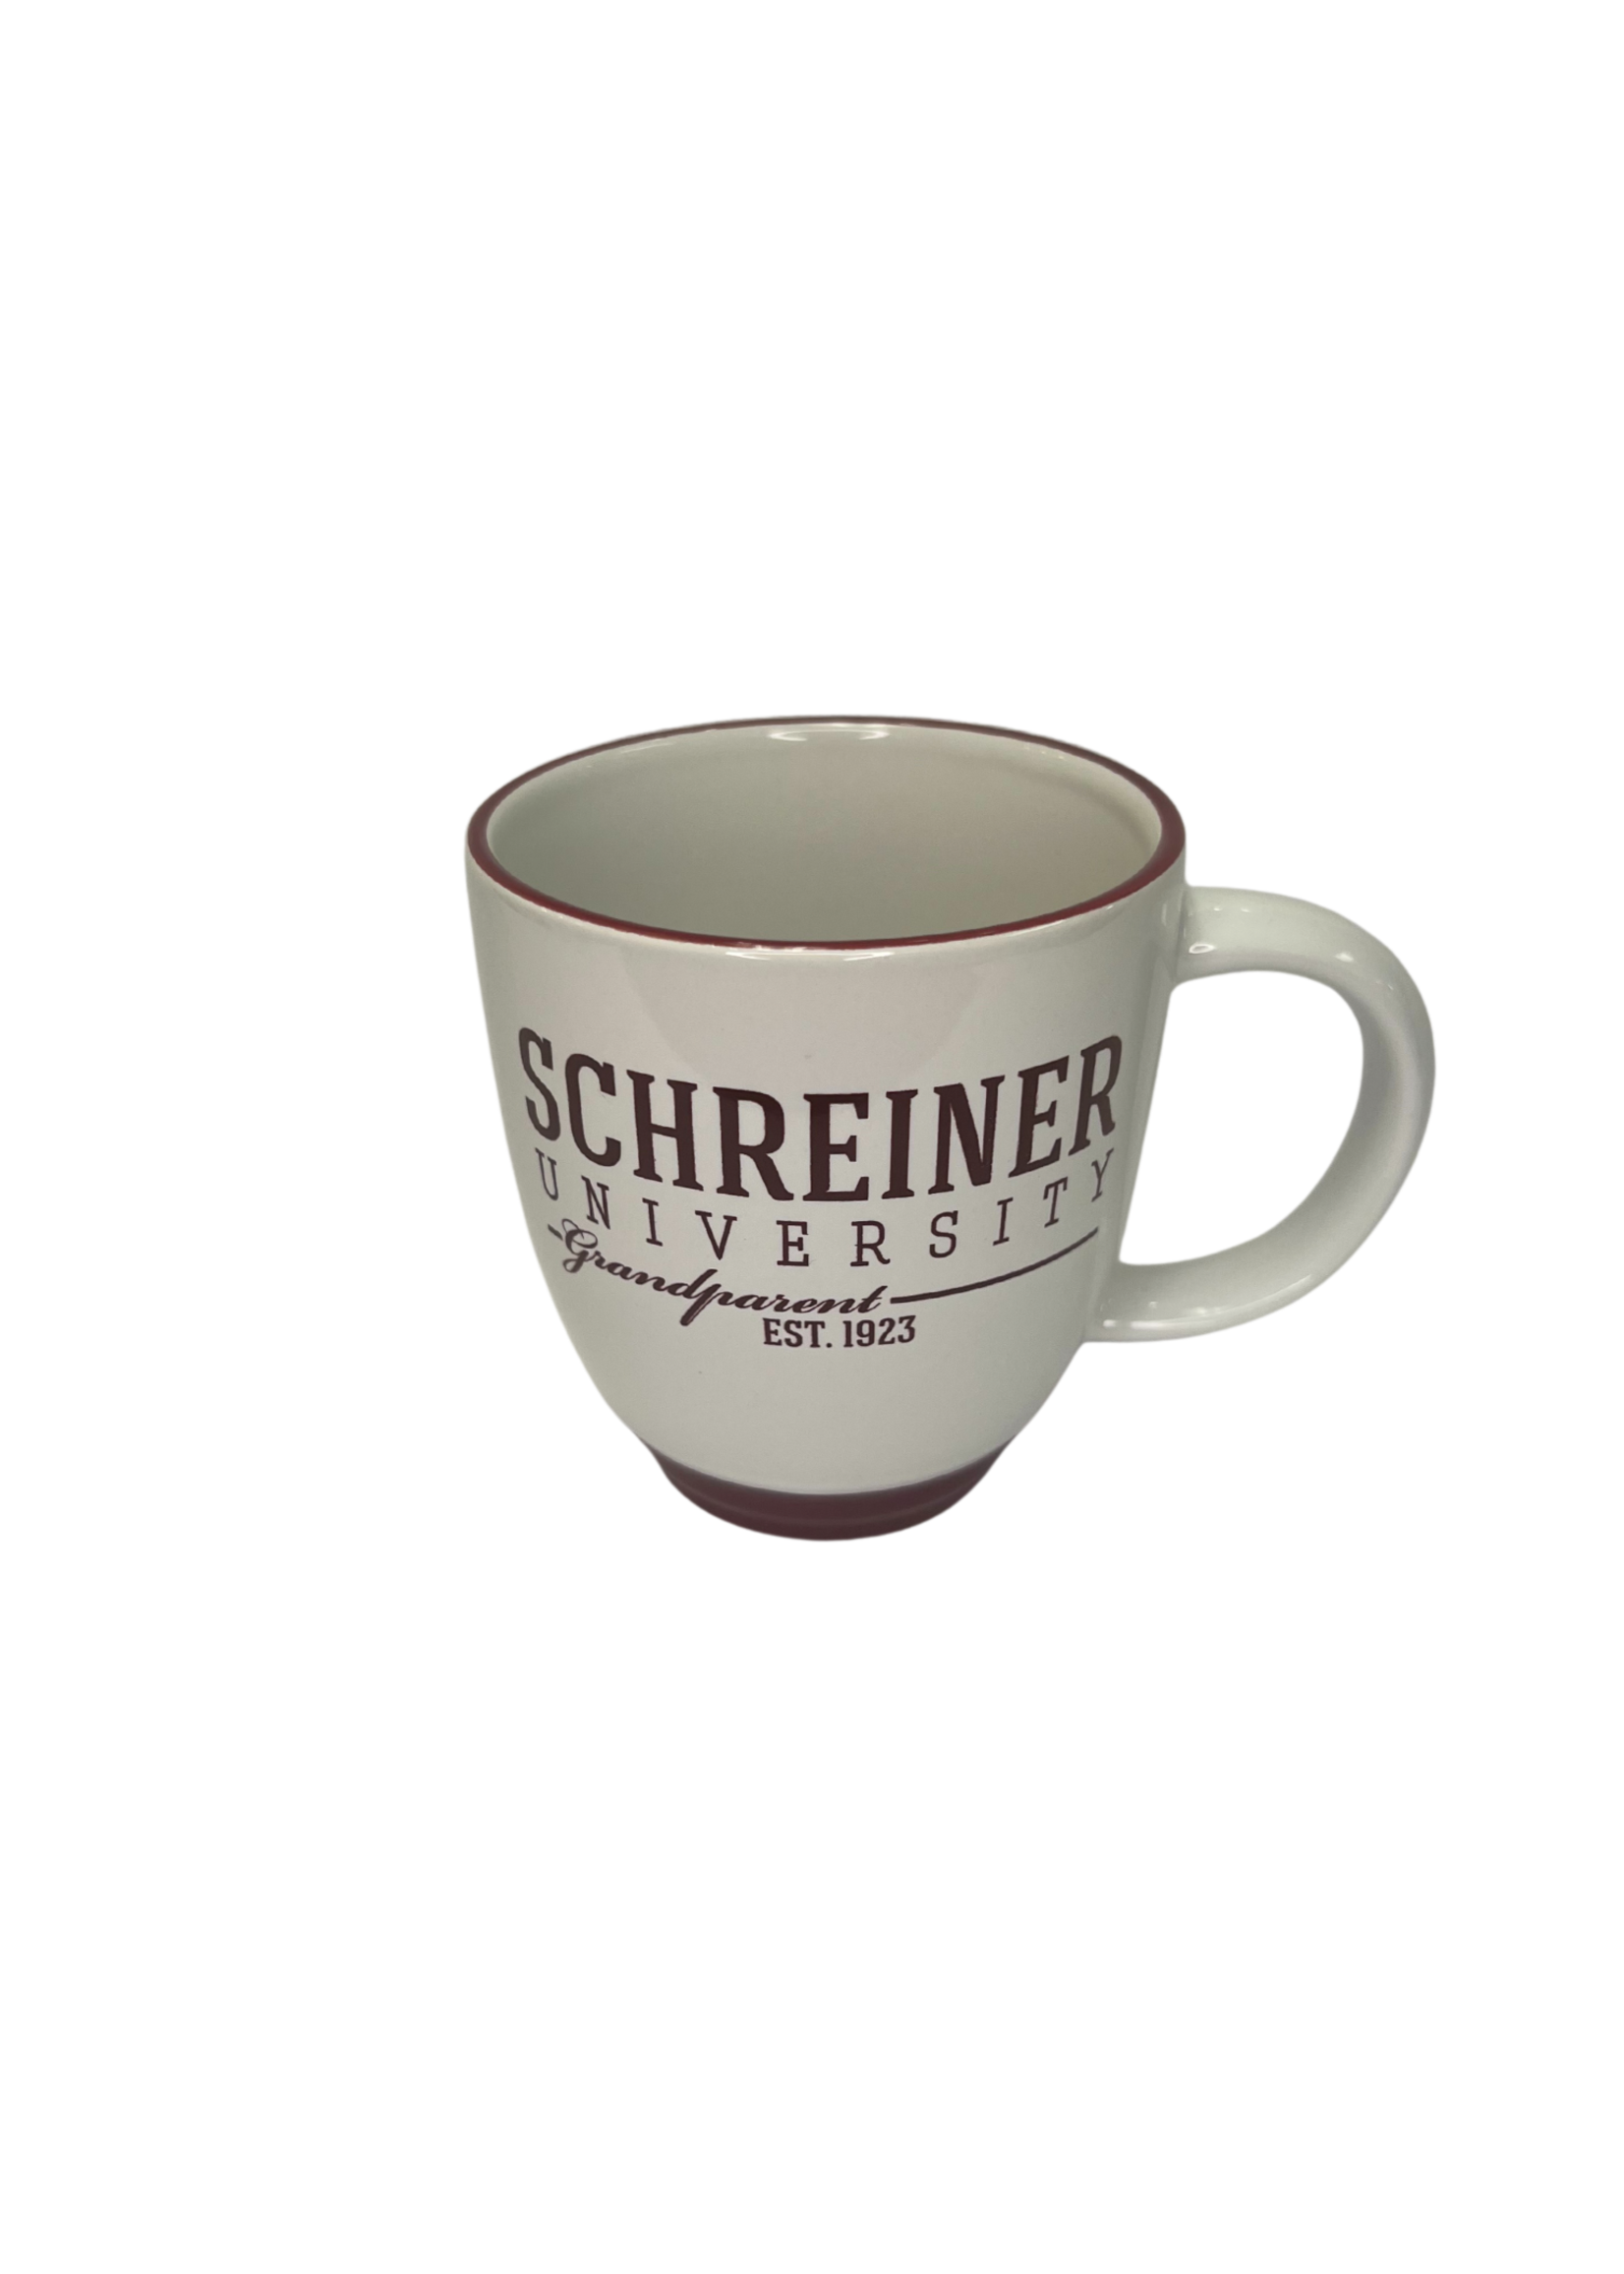 Schreiner University Est1923 Bistro Mug